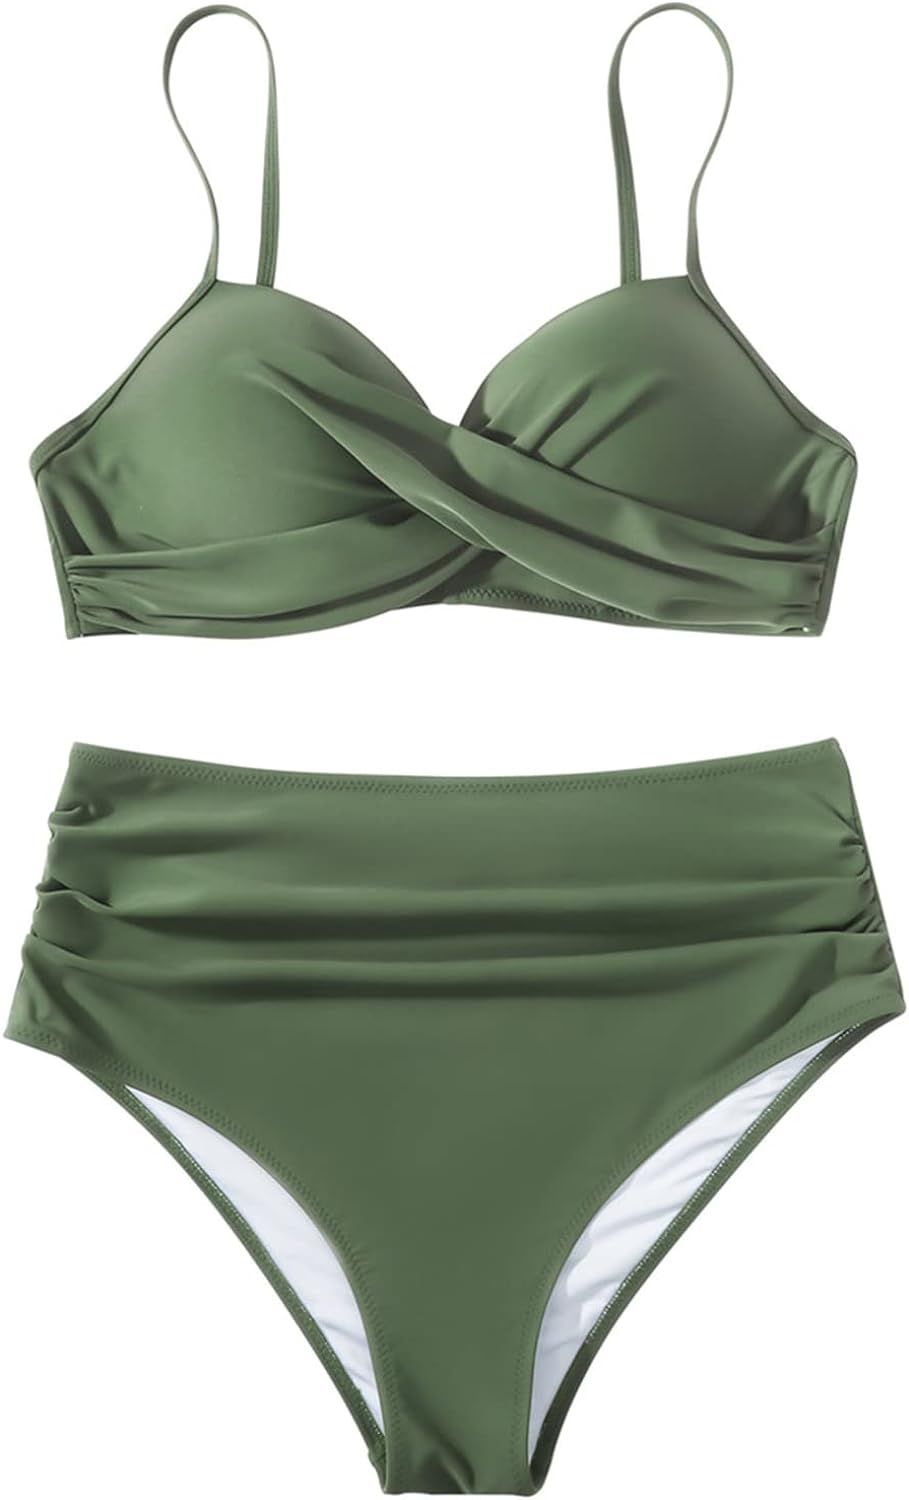 SUUKSESS Women Twist High Waisted Bikini Sexy Push Up Two Piece Swimsuits | Amazon (US)